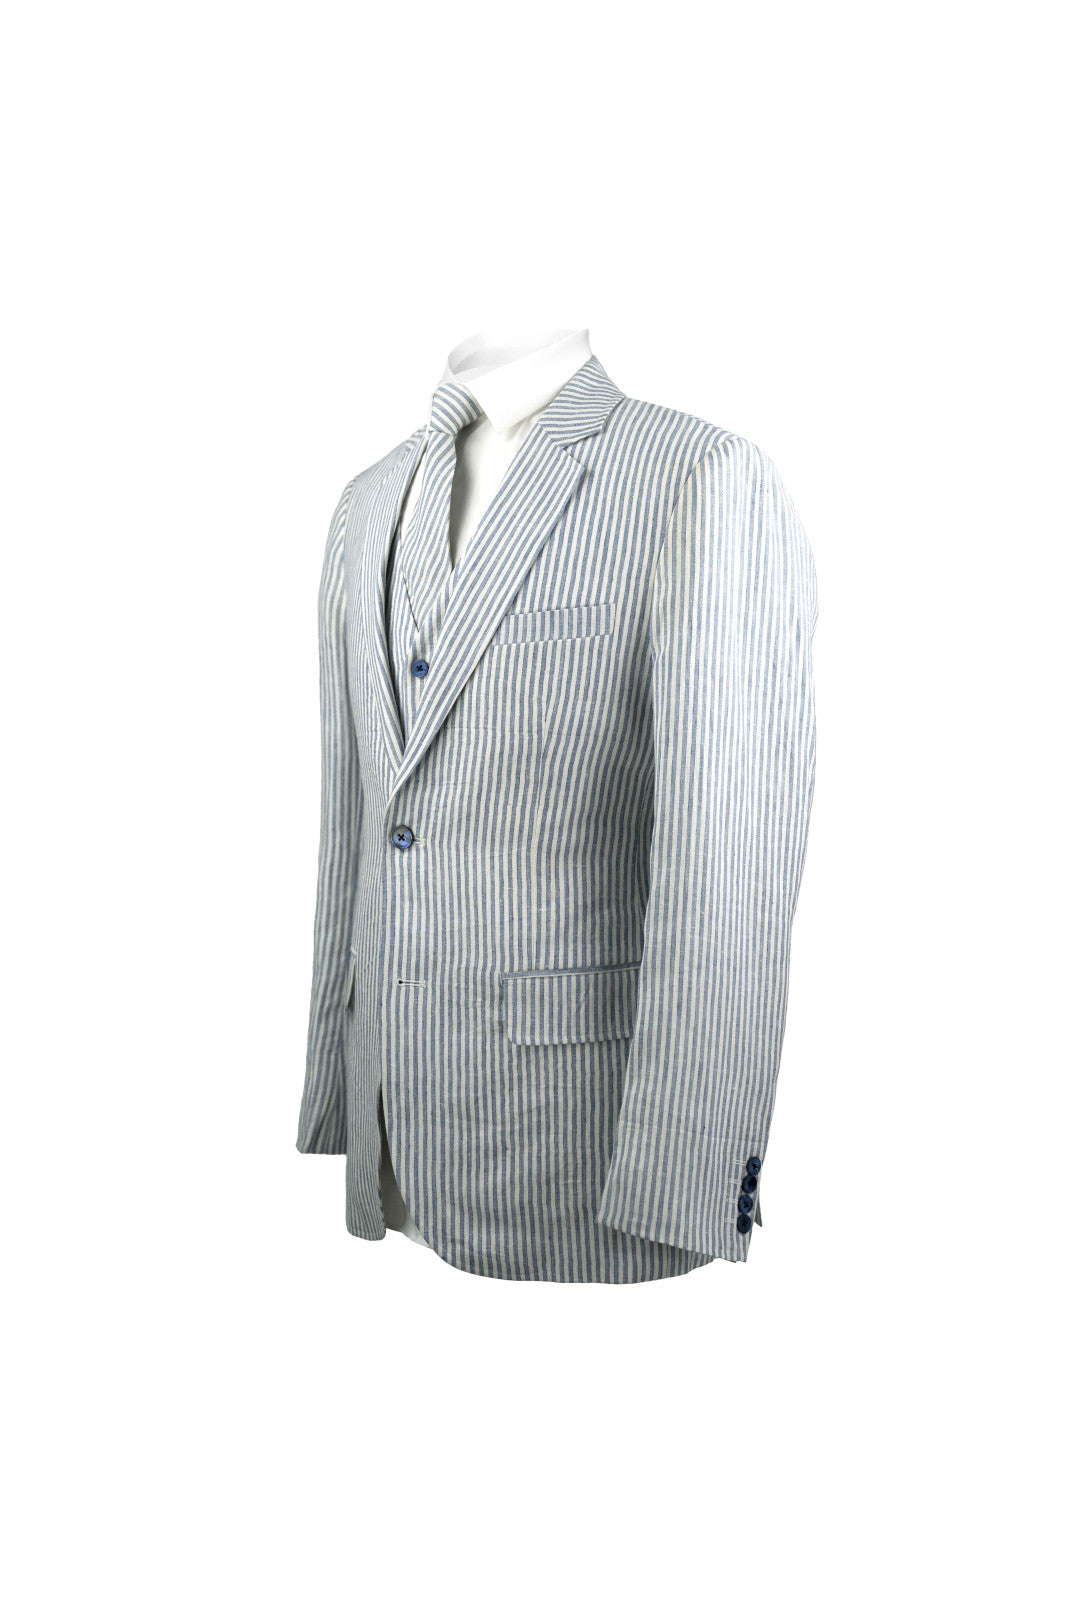 White & Blue Stripe Linen 3 Piece Suit